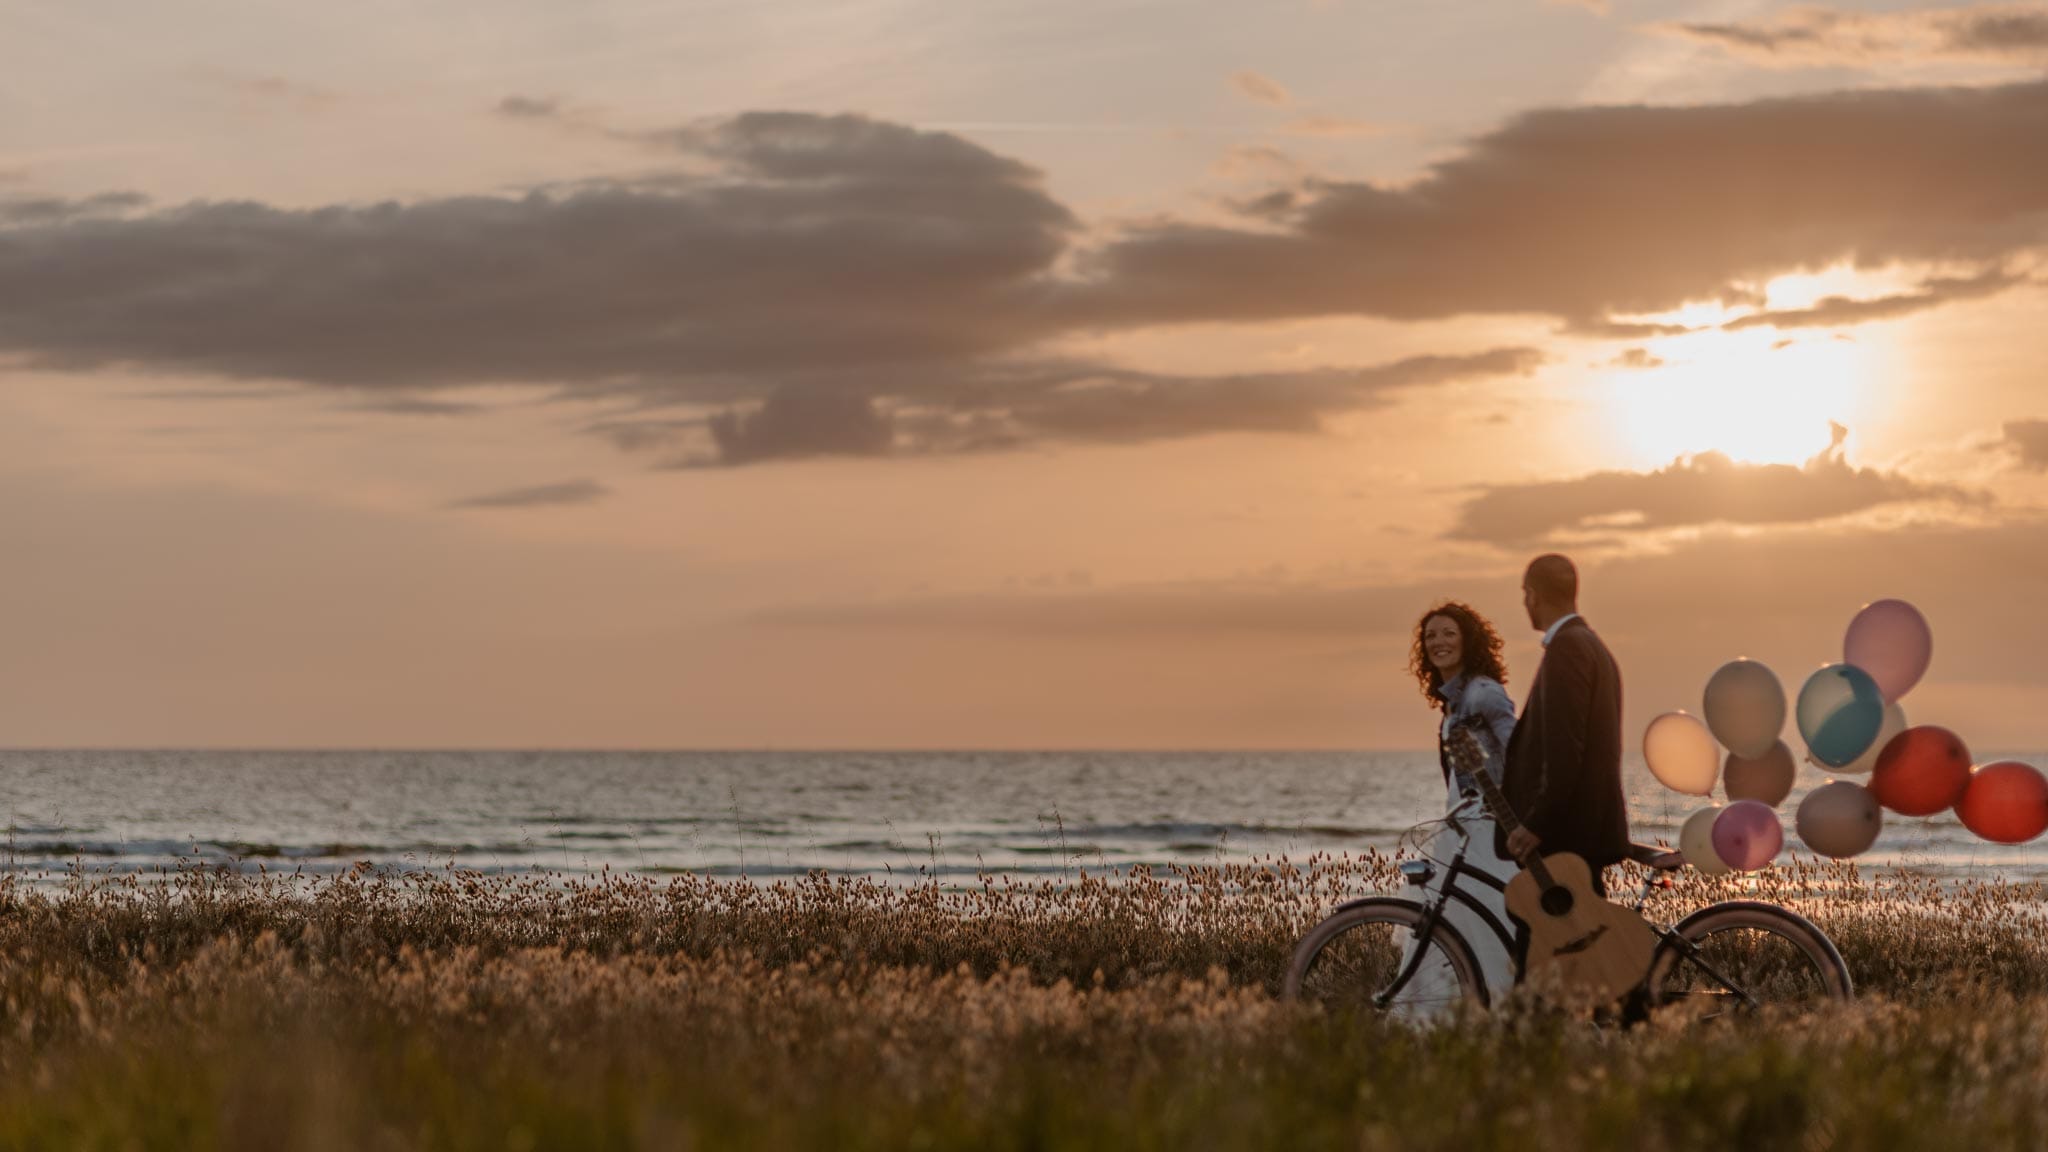 Séance couple après mariage chic & bohème sur la plage au bord de l’Océan près de la Baule par Geoffrey Arnoldy photographe